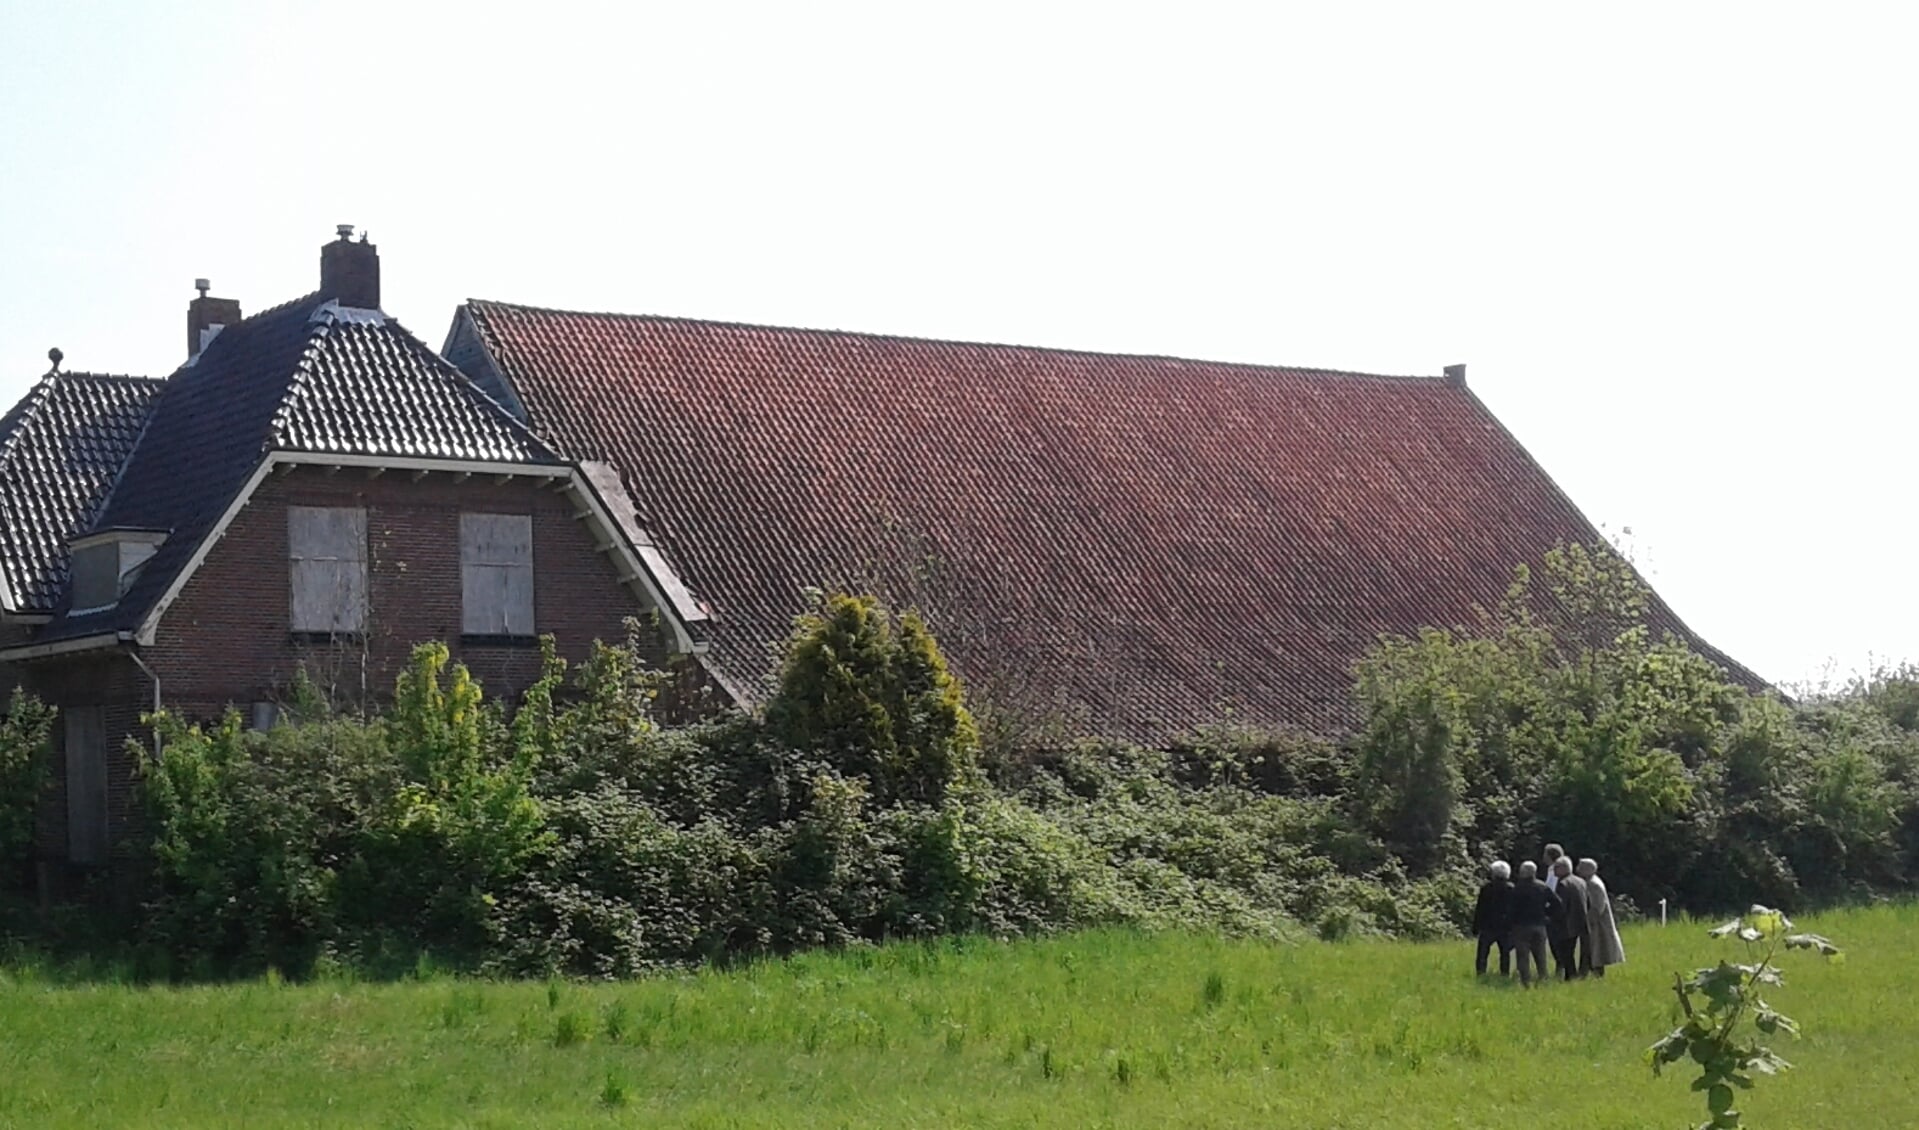 Er is uitgebreid onderzoek gedaan naar de bouwkundige kwaliteit van de historische schuur van Welgelegen in Ouddorp. Foto: Stichting tot Bescherming van het Dorpsgezicht.